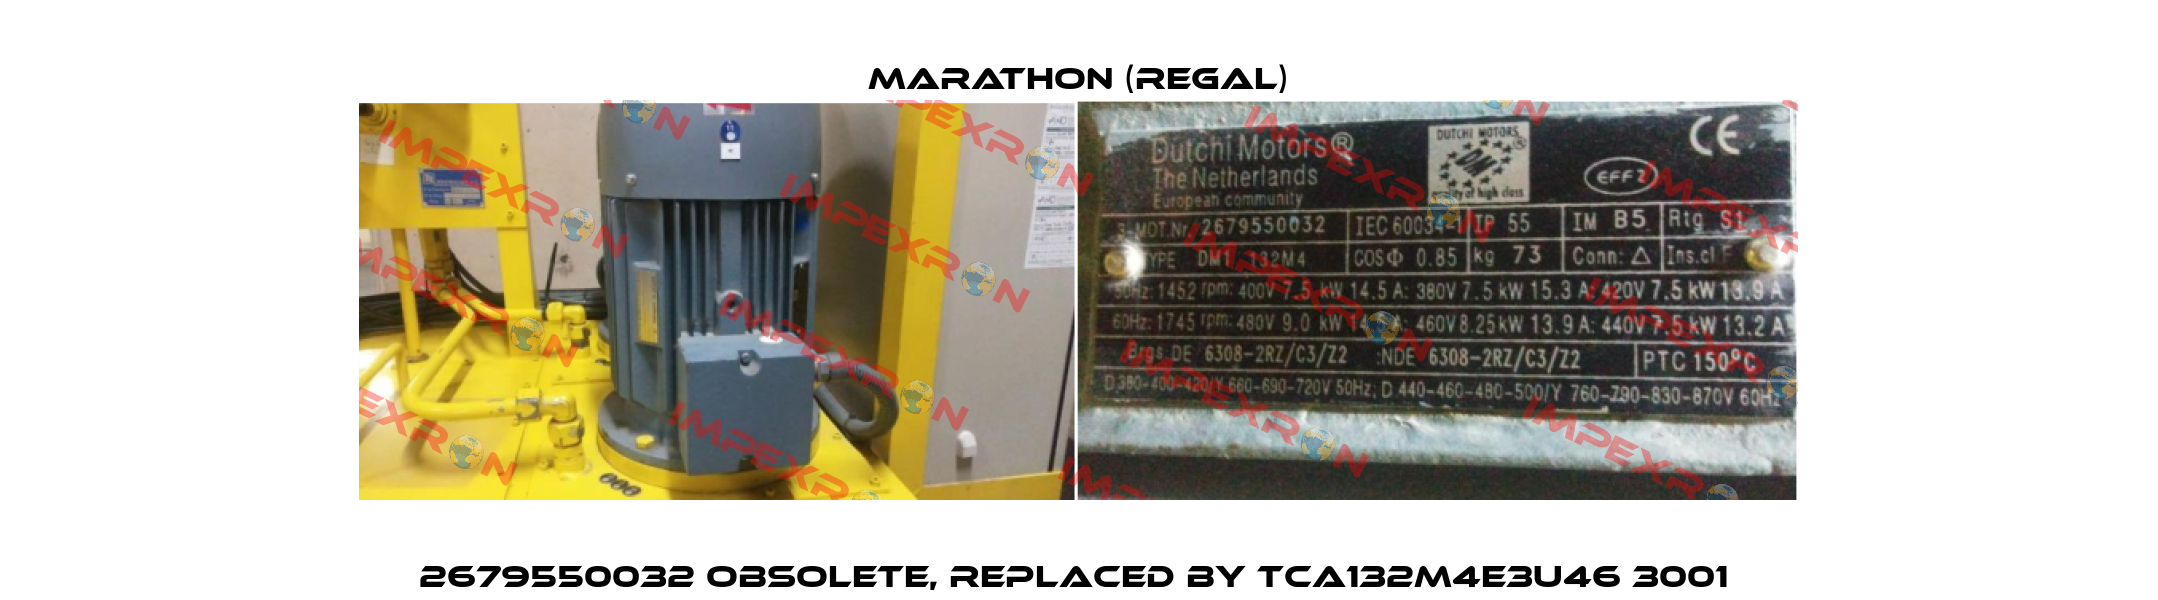 2679550032 obsolete, replaced by TCA132M4E3U46 3001  Marathon (Regal)